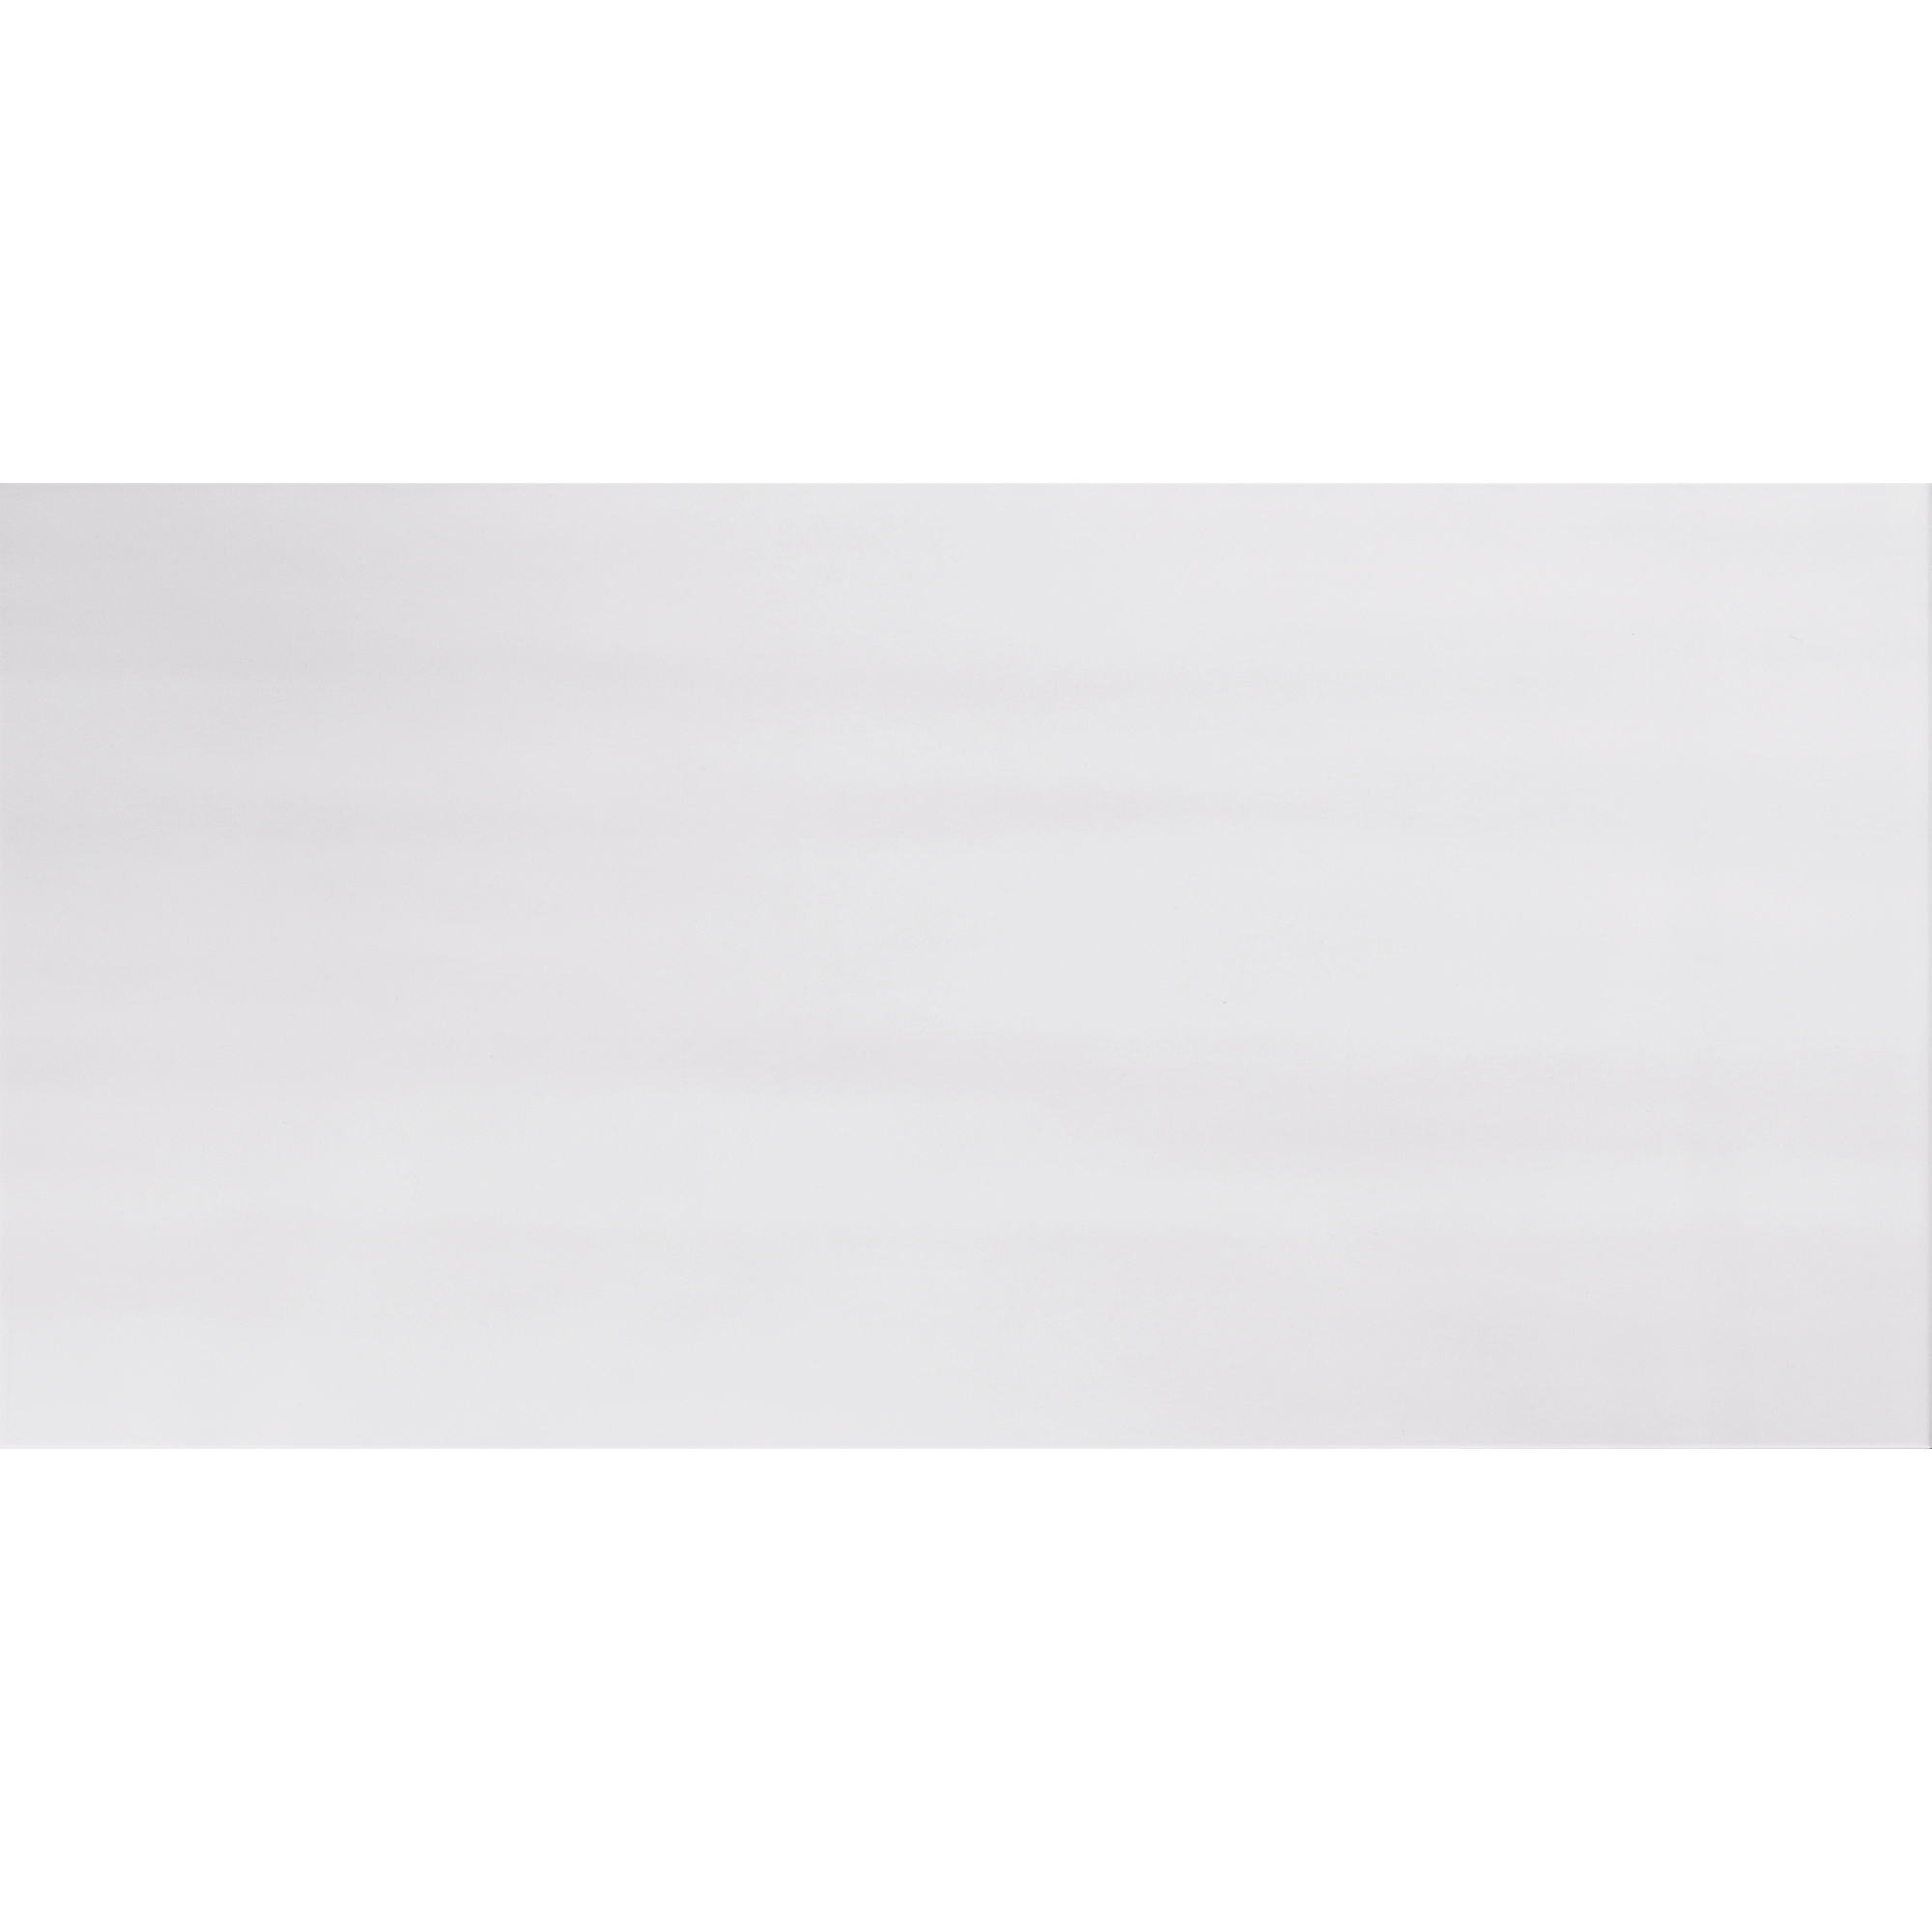 Wandfliese 'Velvet' Steingut grau 29,8 x 59,8 cm + product picture